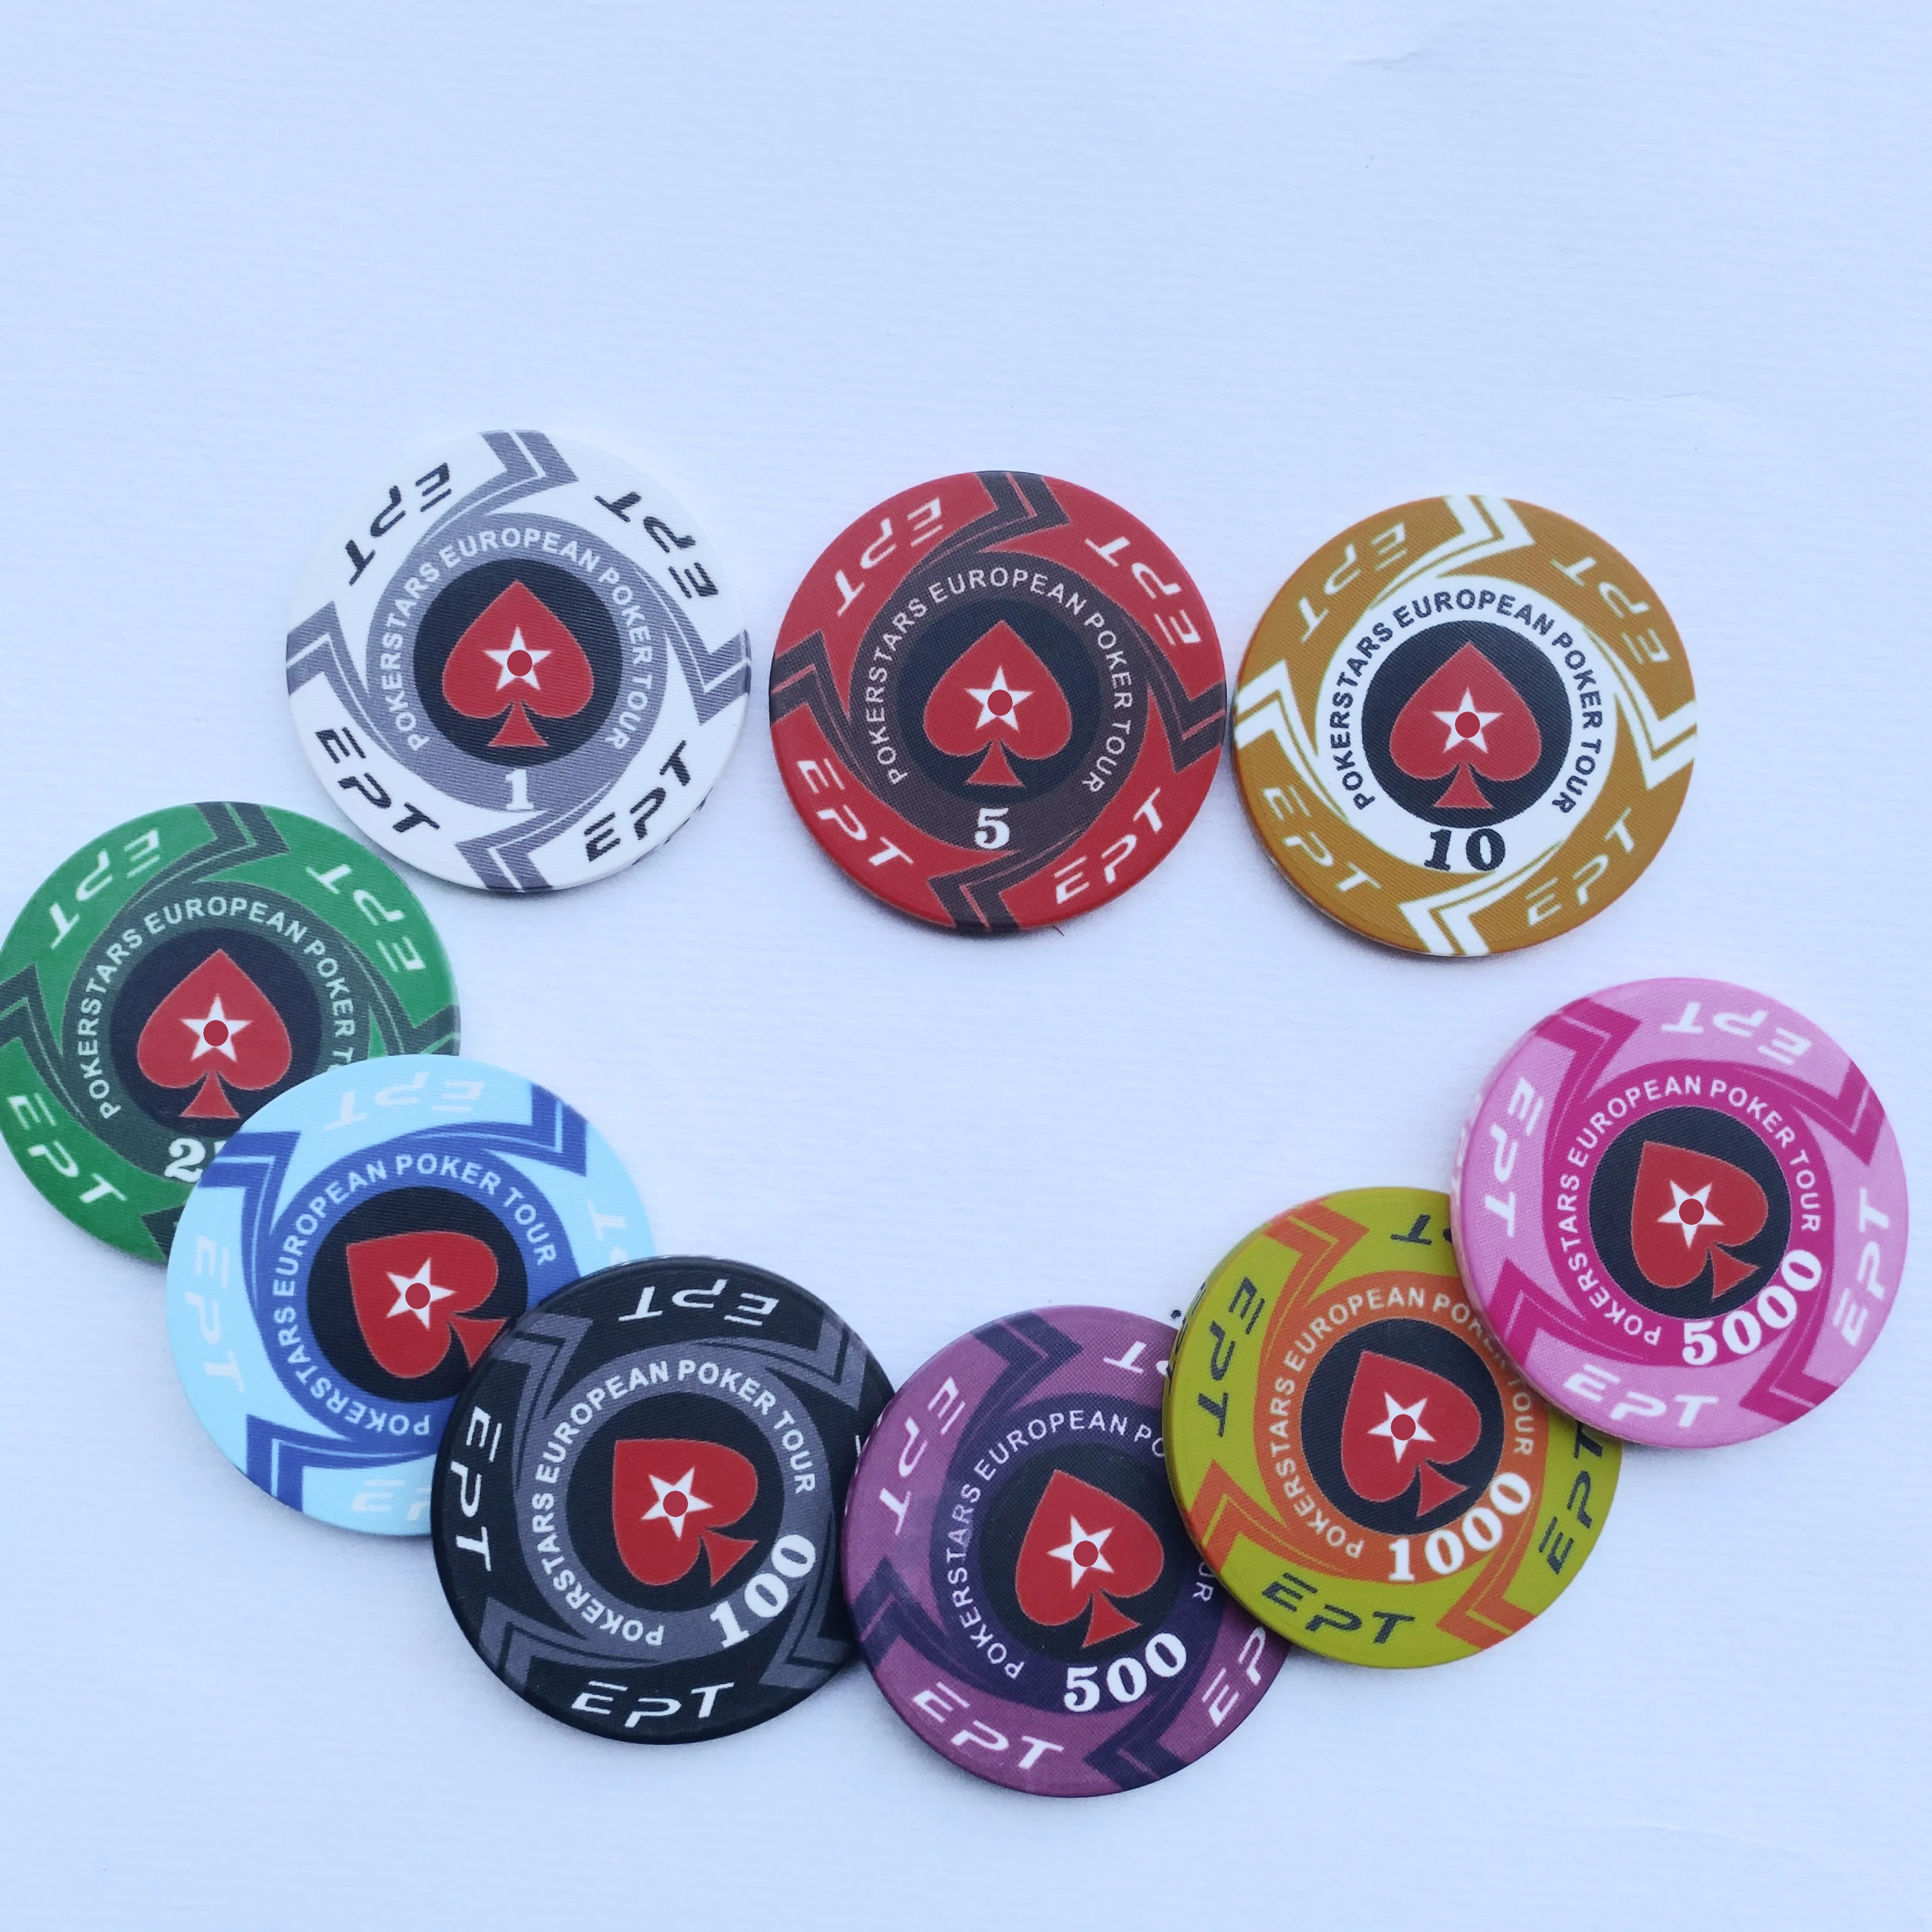 Ept Ceramic Poker Chips Casino Quality Custom Blank Ceramic Chips - Buy Custom Ceramic Chips,Casino Ceramic Chips,Ept Ceramic Poker Chips Product on